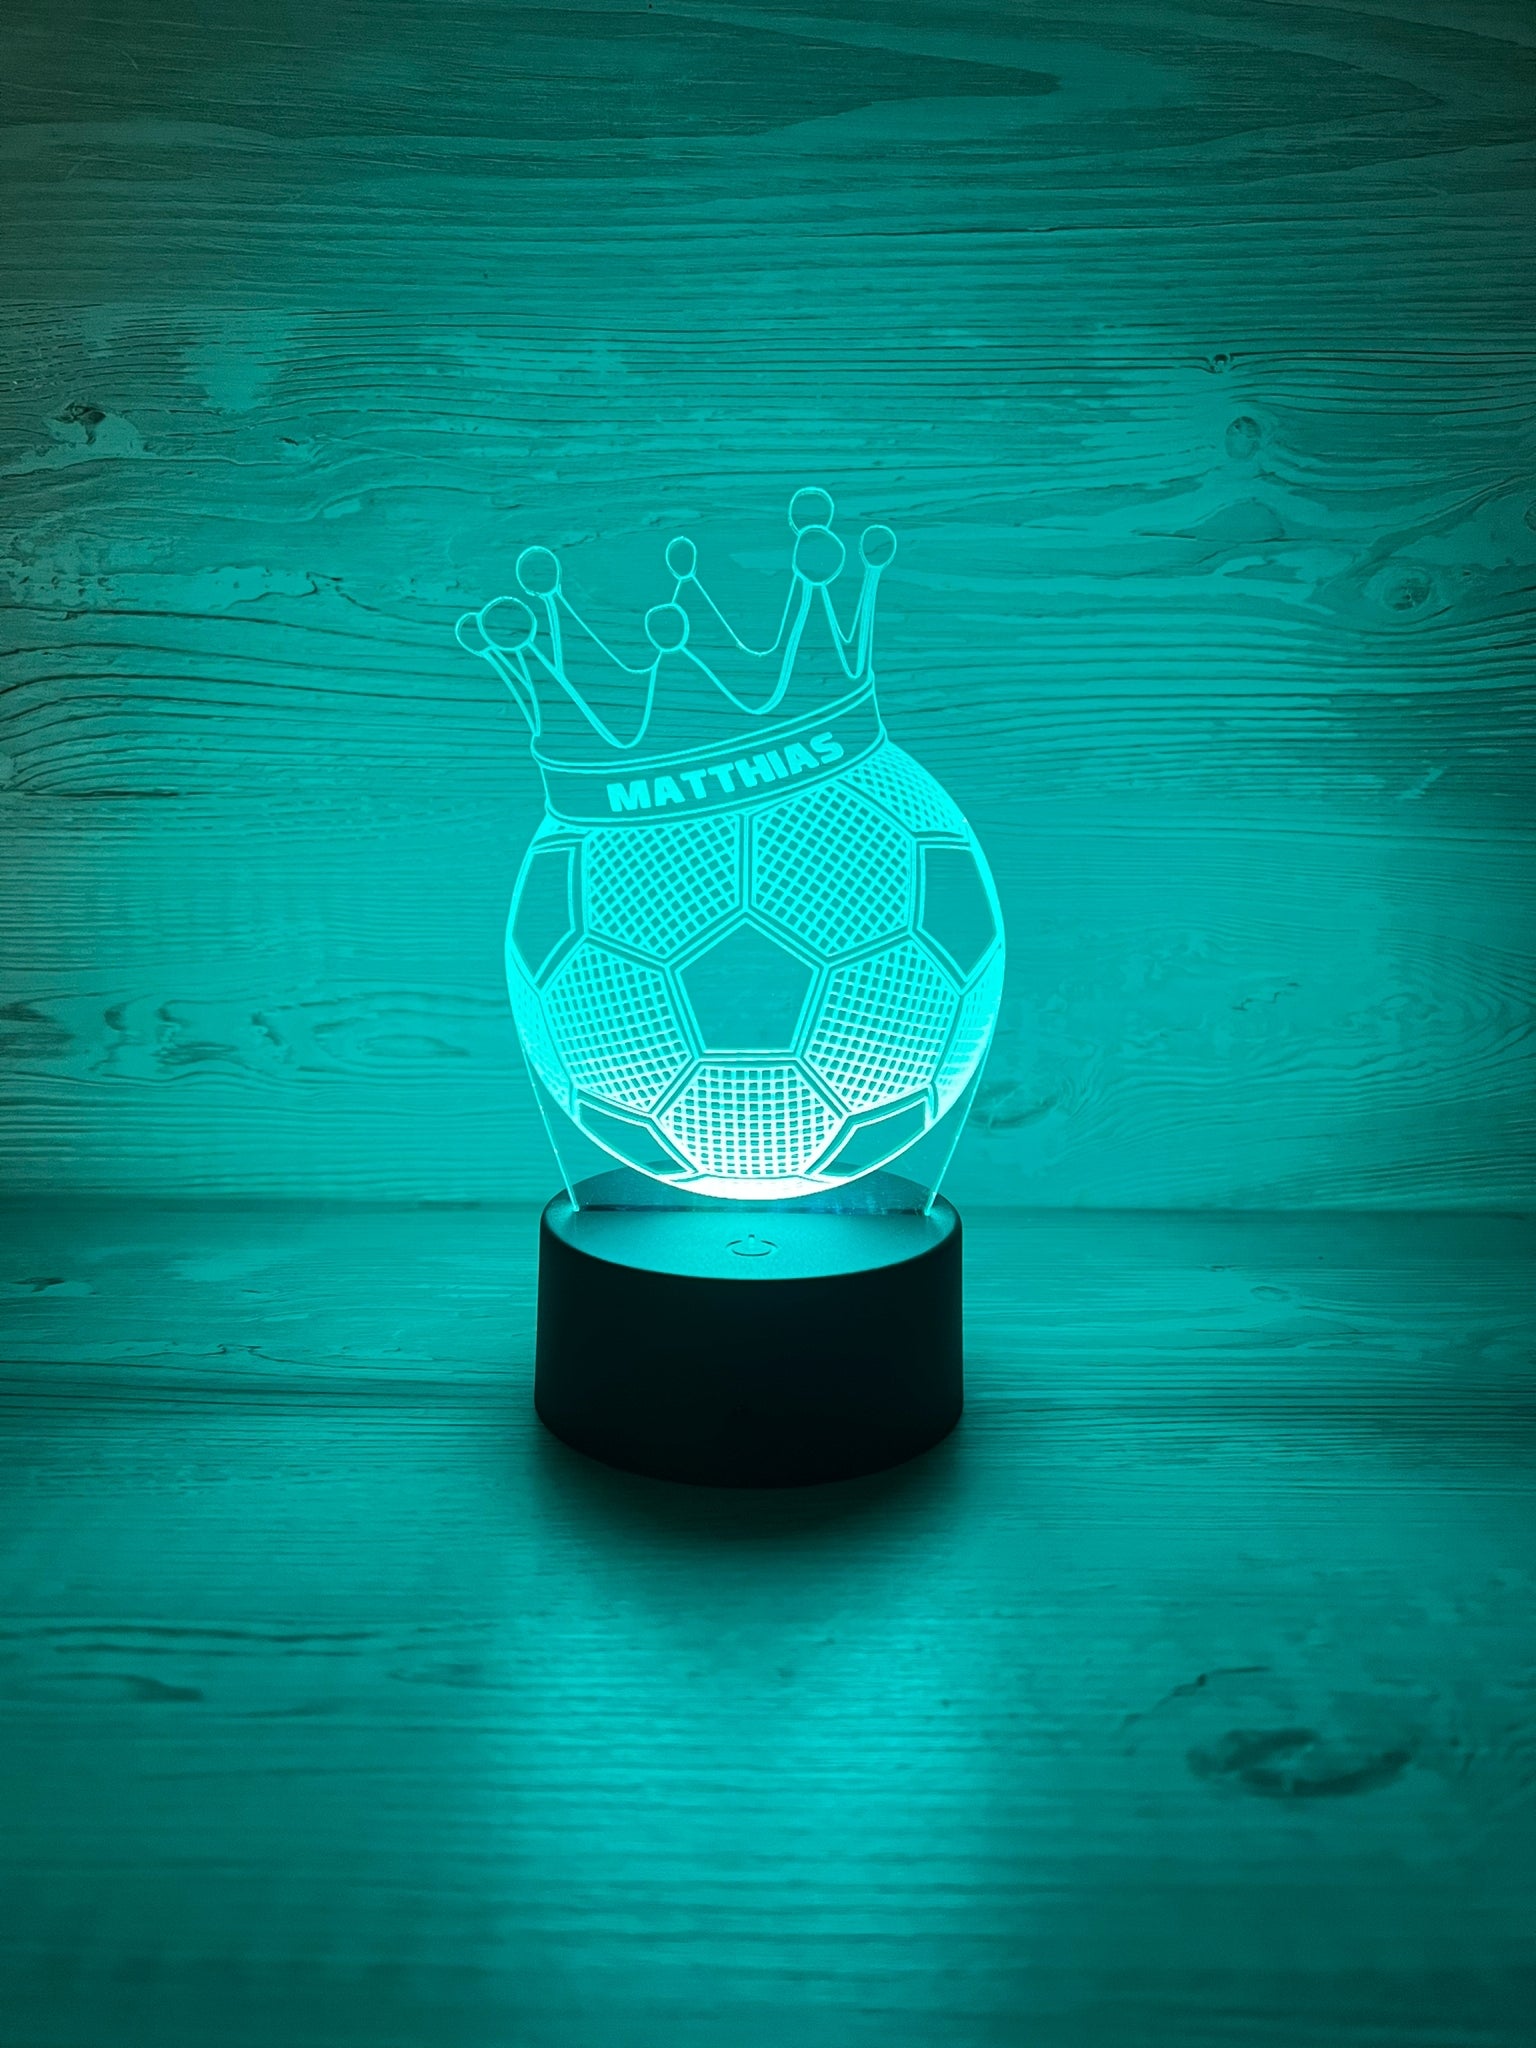 Exklusiv personalisierte Nachtlampe aus Acryl in Fußballoptik mit Krone, Nachttischlampe, Babygeschenk, Geburt, Taufgeschenk, Besonders